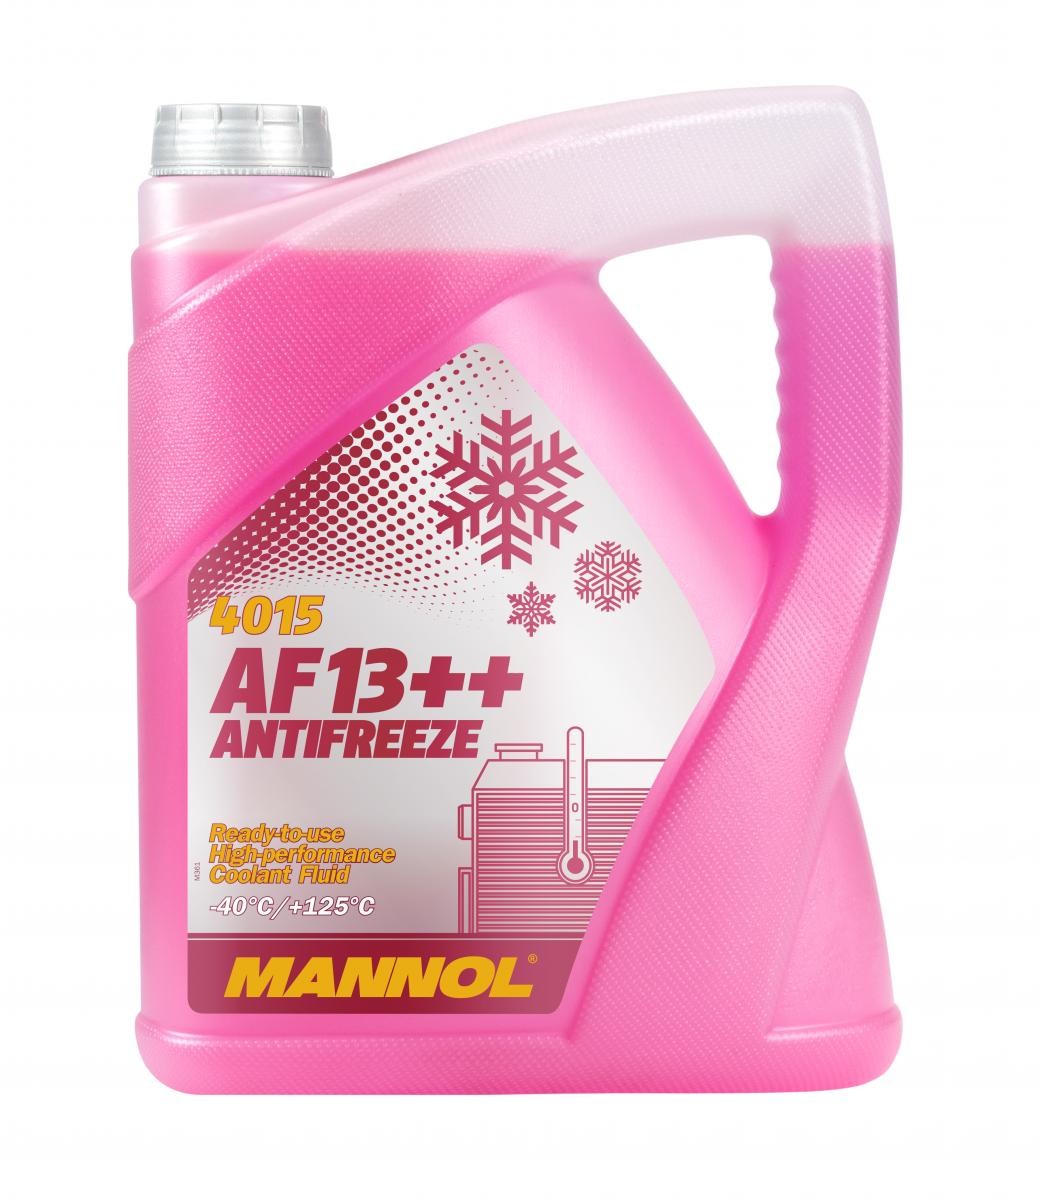 Compre MANNOL Anticongelante MN4015-5 para SCANIA a um preço moderado